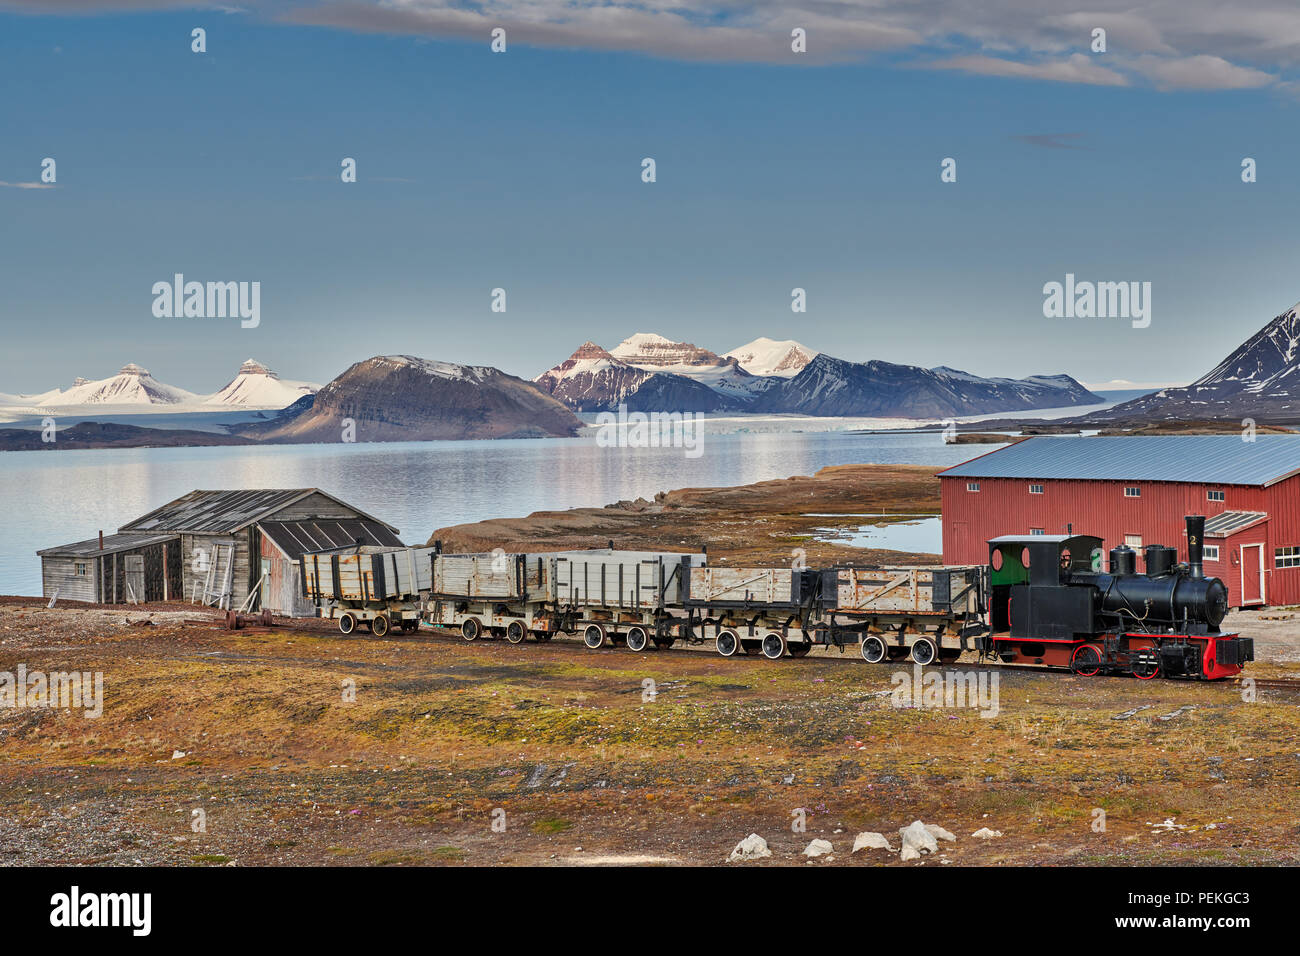 Vieux train de charbon et de l'extrême nord de la vue et de règlement civil fonctionnel Ny-Ålesund sur le paysage avec les trois crones, Svalbard ou Spitsb Banque D'Images